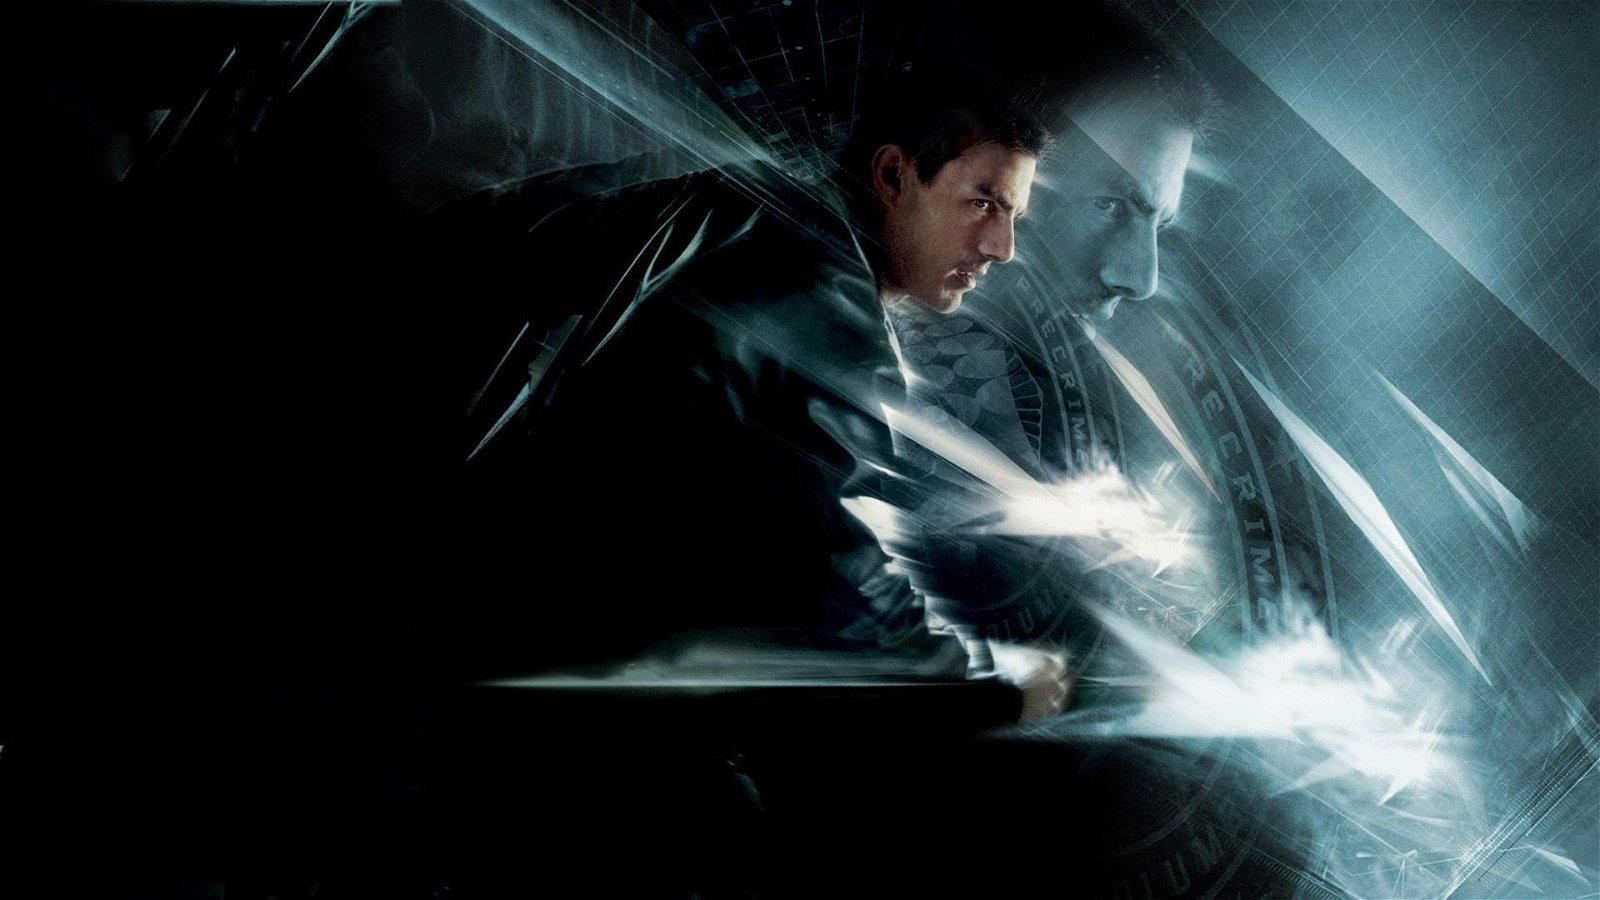 På tv i kväll – Spielbergs dystopiska sci-fi-rulle med Tom Cruise